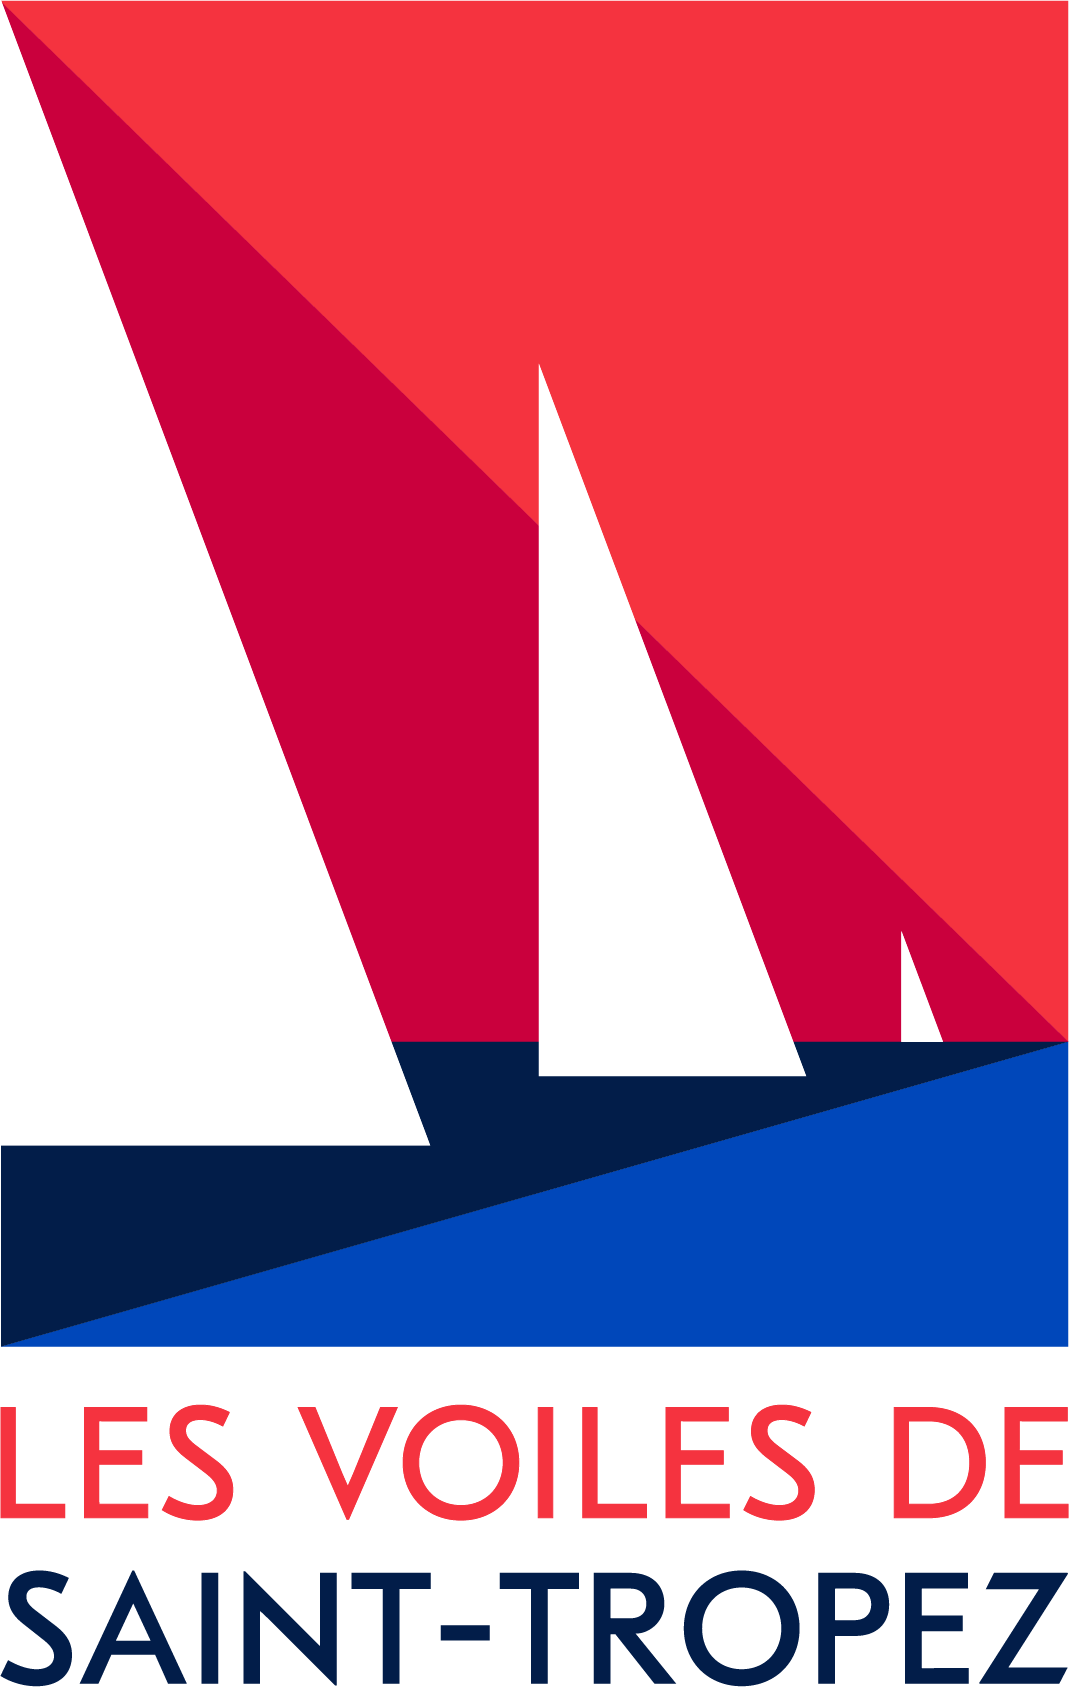 North Sails x Les Voiles de Saint-Tropez logo